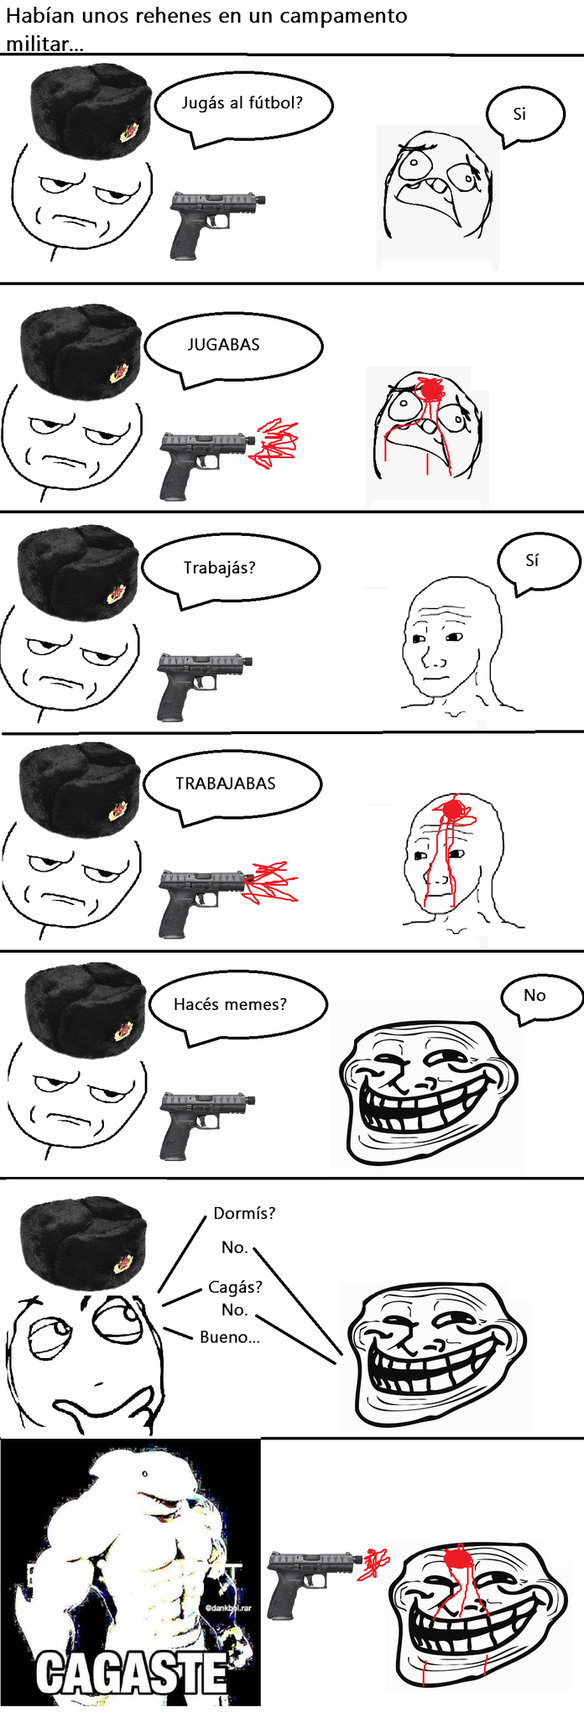 Militares rusos - meme